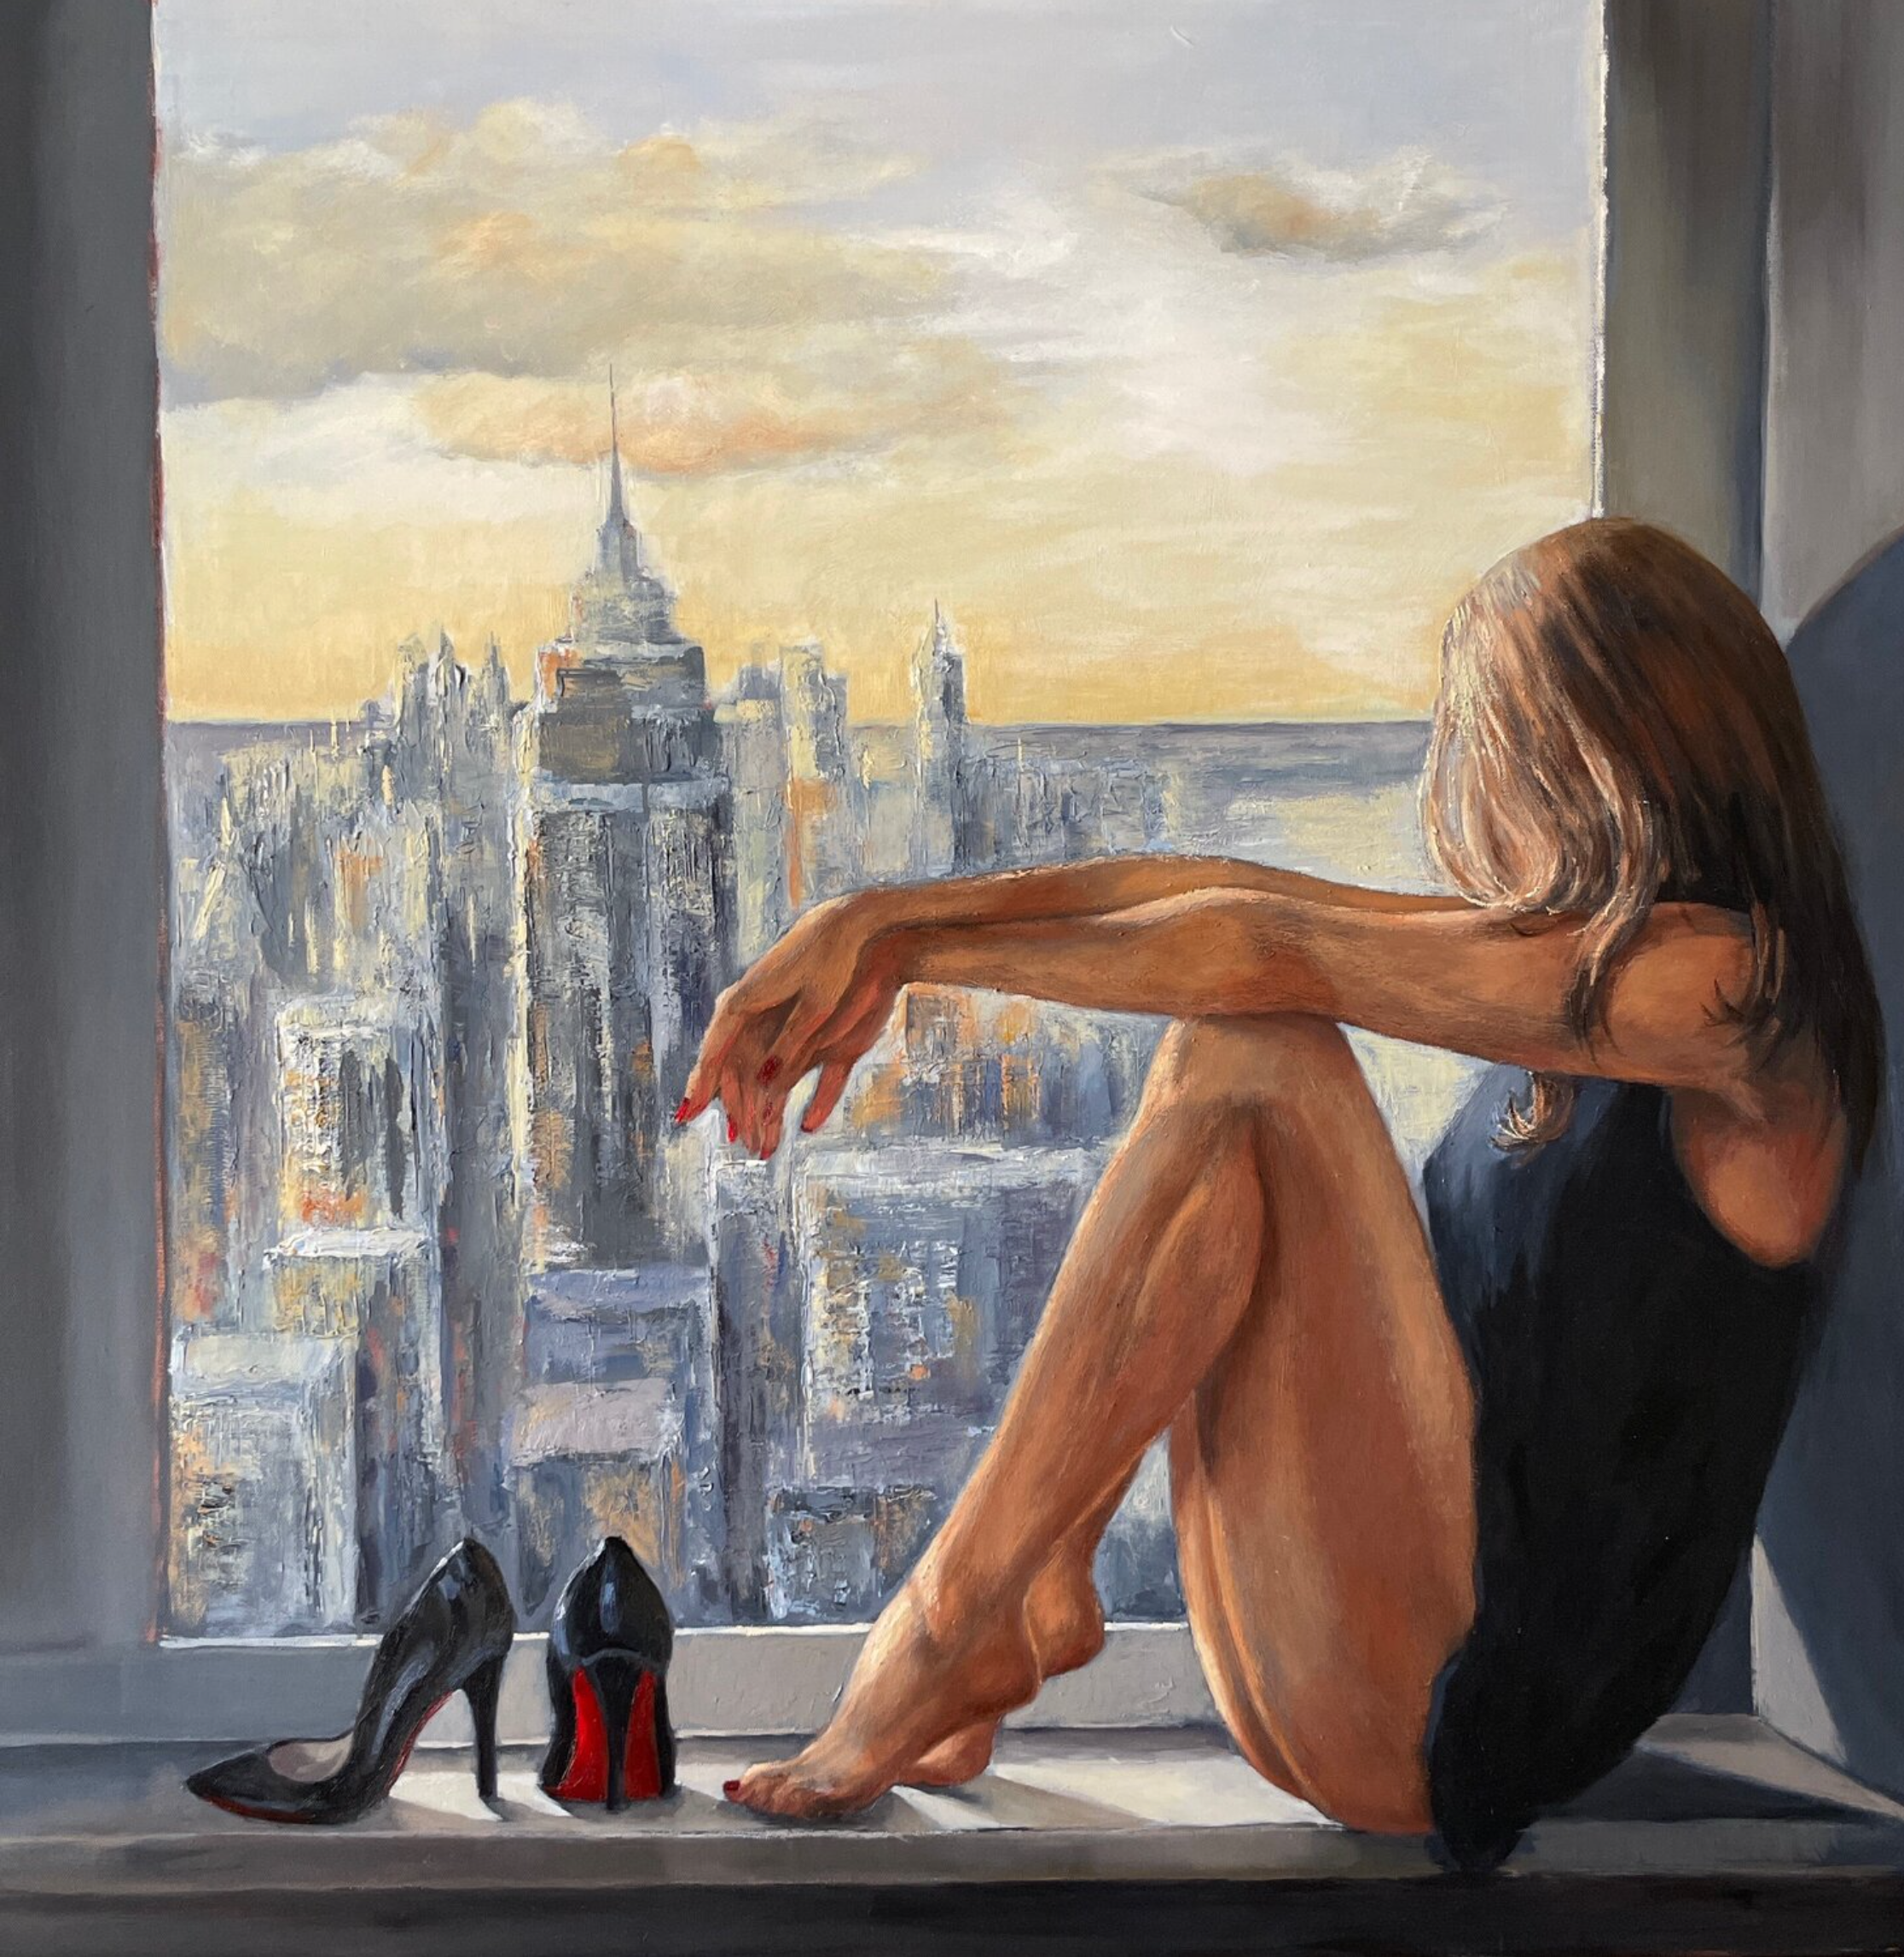 Il dipinto "New Day" di Anna Reznikova mostra una bella donna seduta su un davanzale di Manhattan.